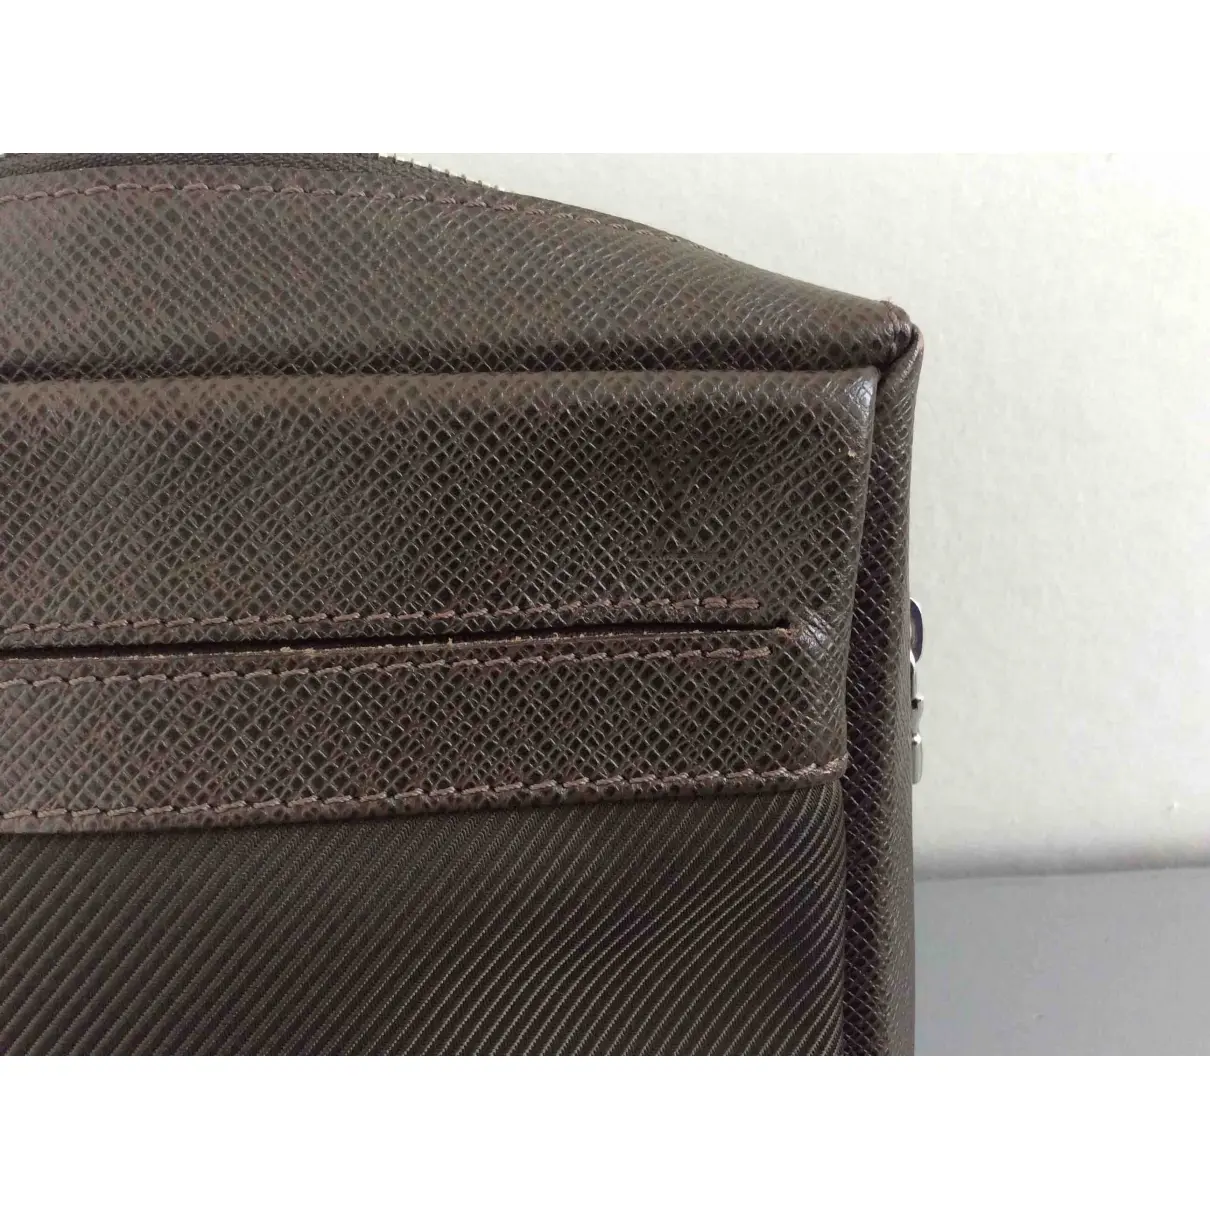 Leather bag Louis Vuitton - Vintage